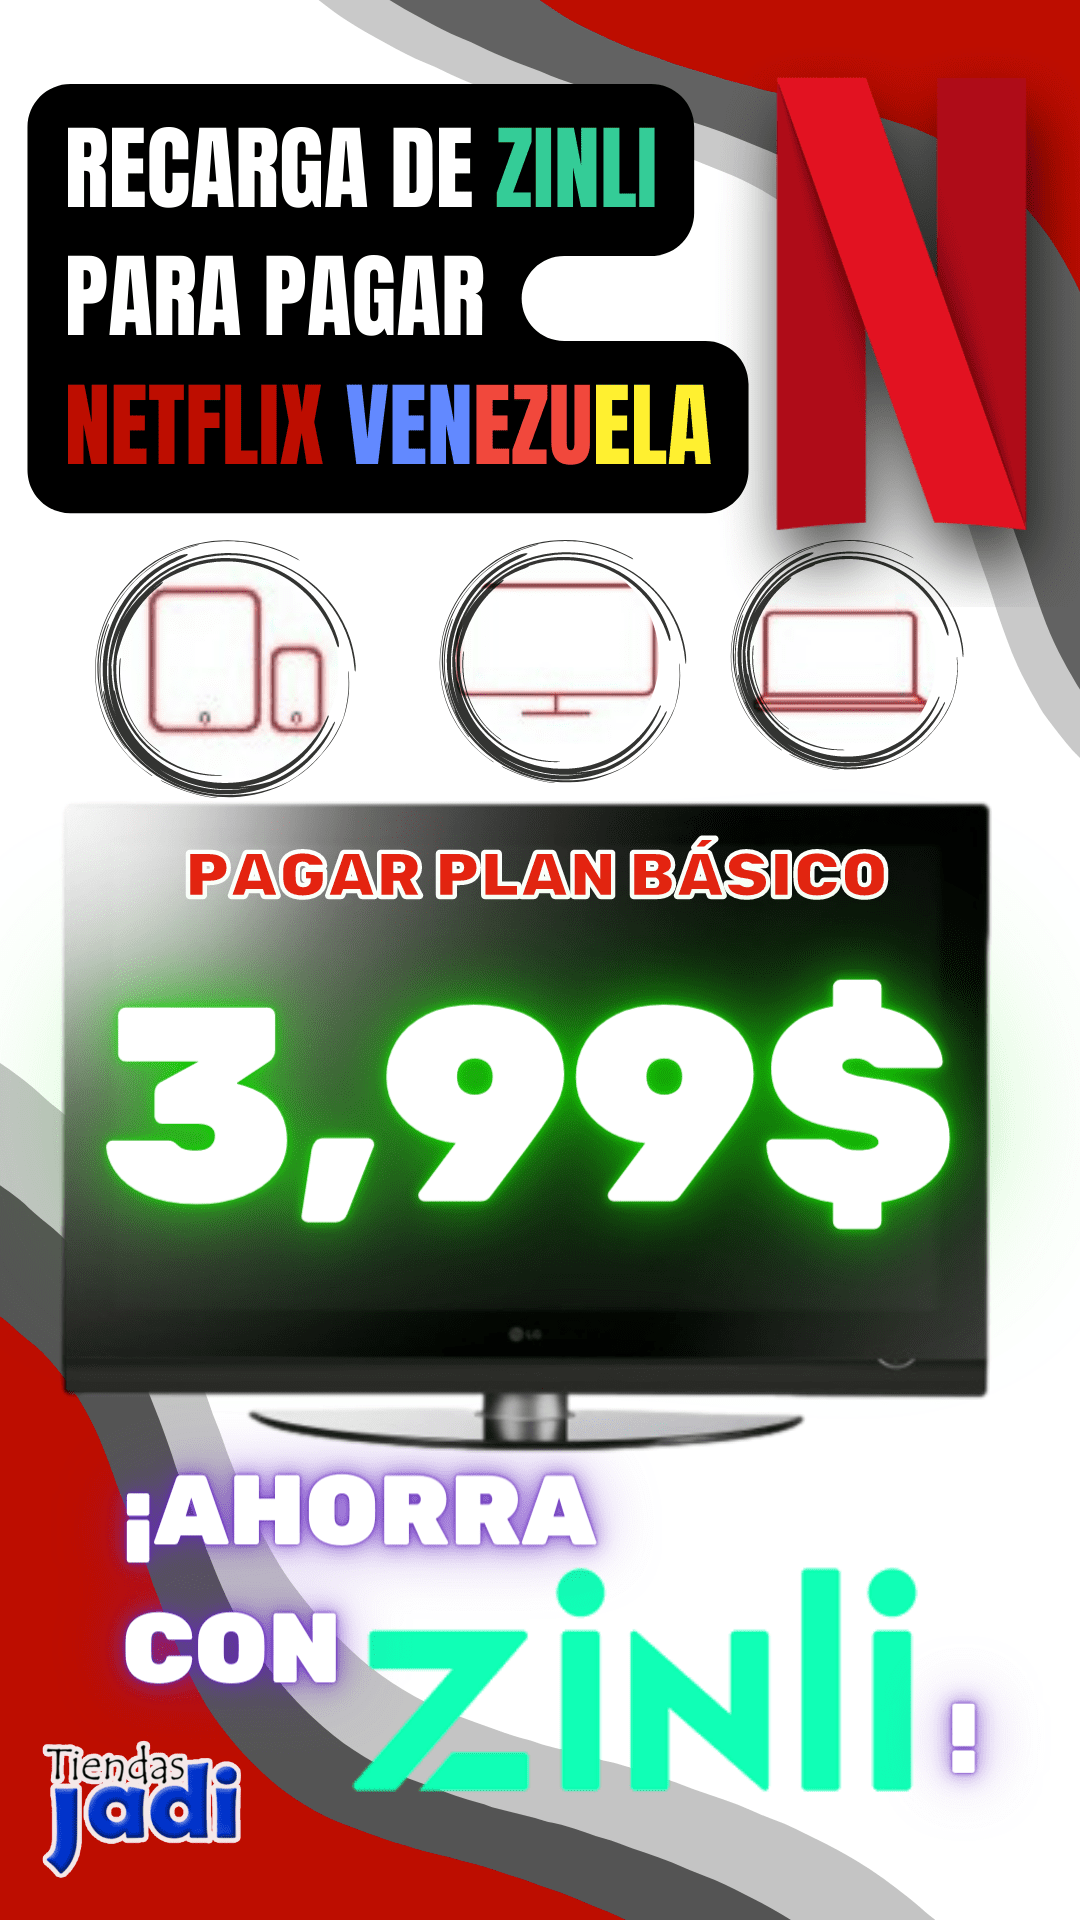 Pago de NETFLIX Venezuela 3.99$ plan basico 1 Pantalla recarga ZINLI